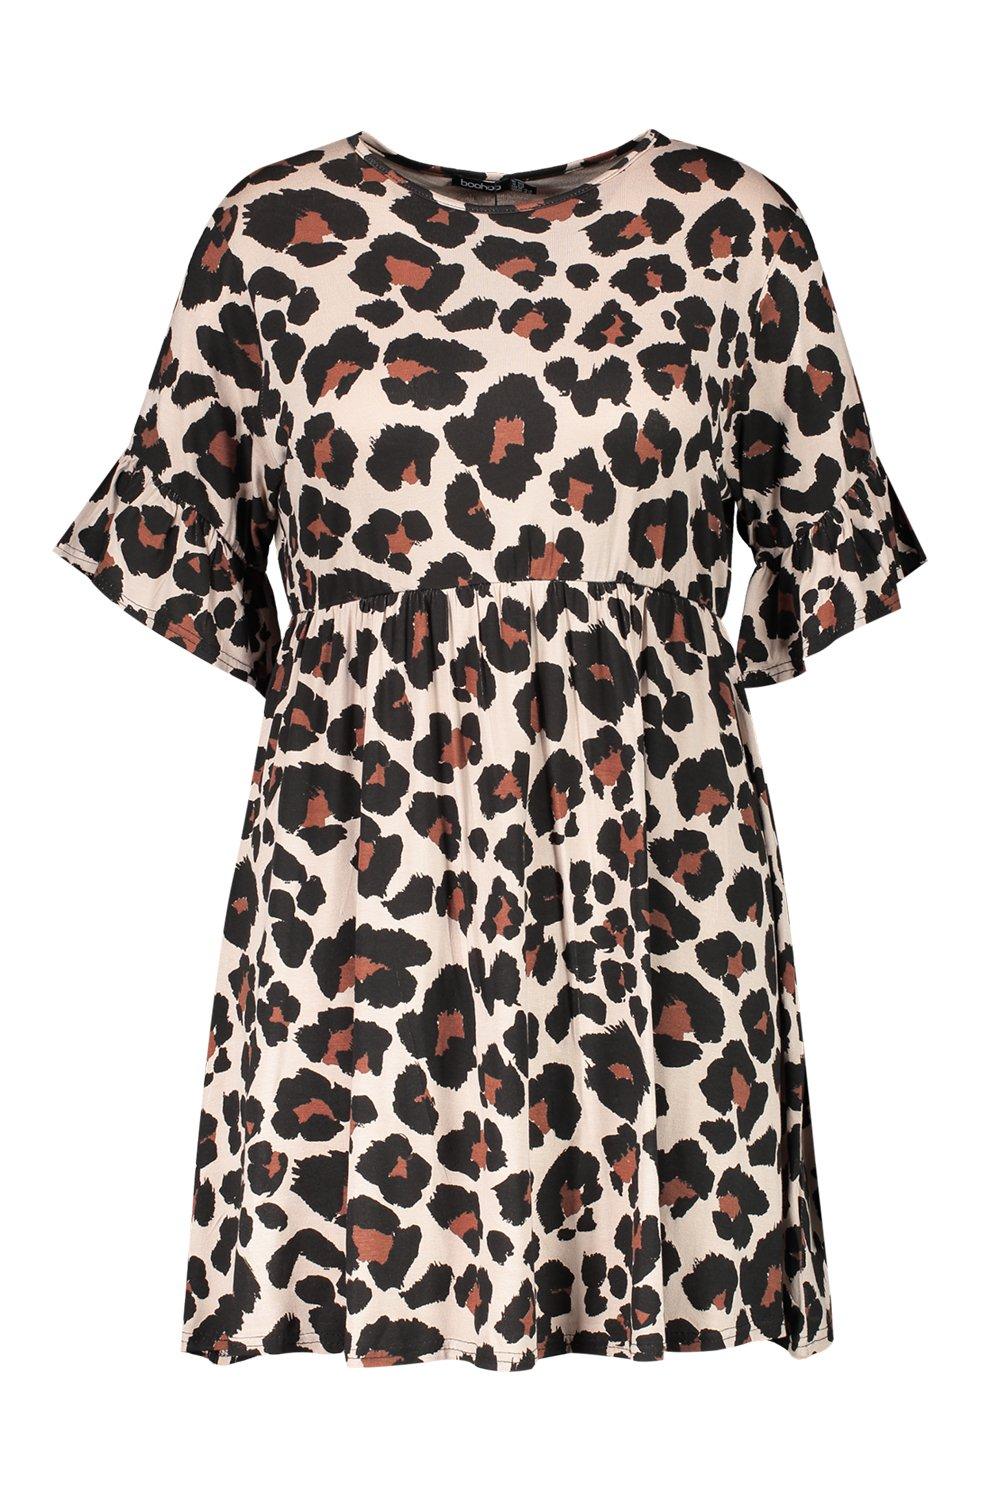 boohoo plus size leopard print dress